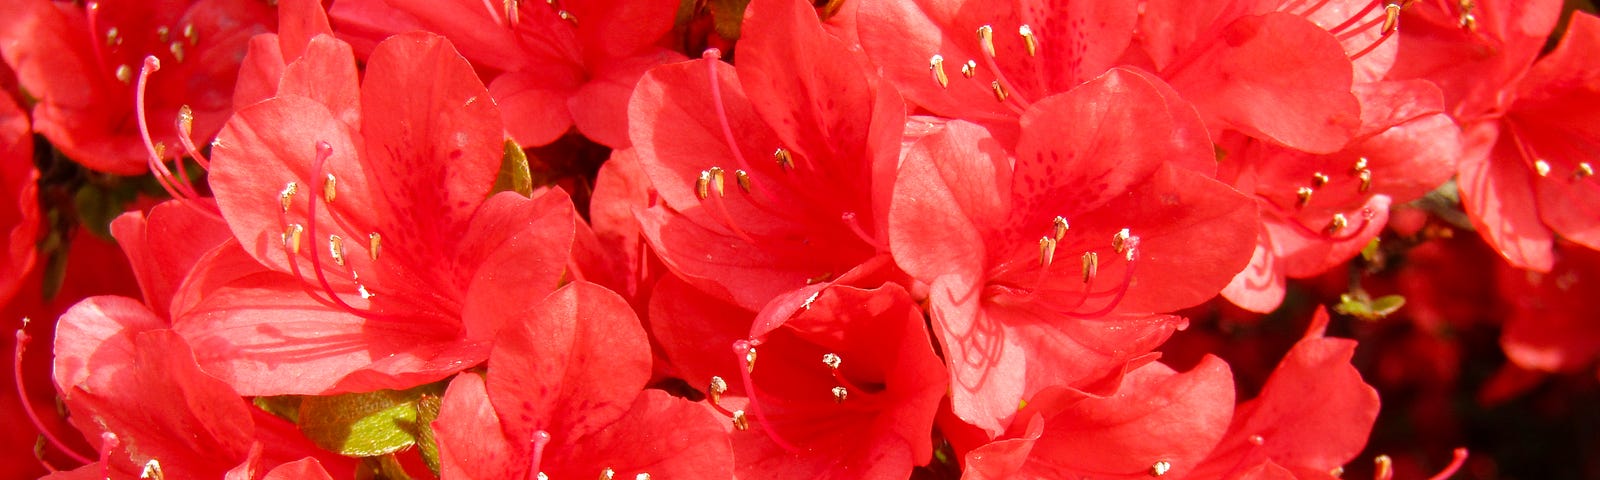 Closeup of a mass of red azaleas.